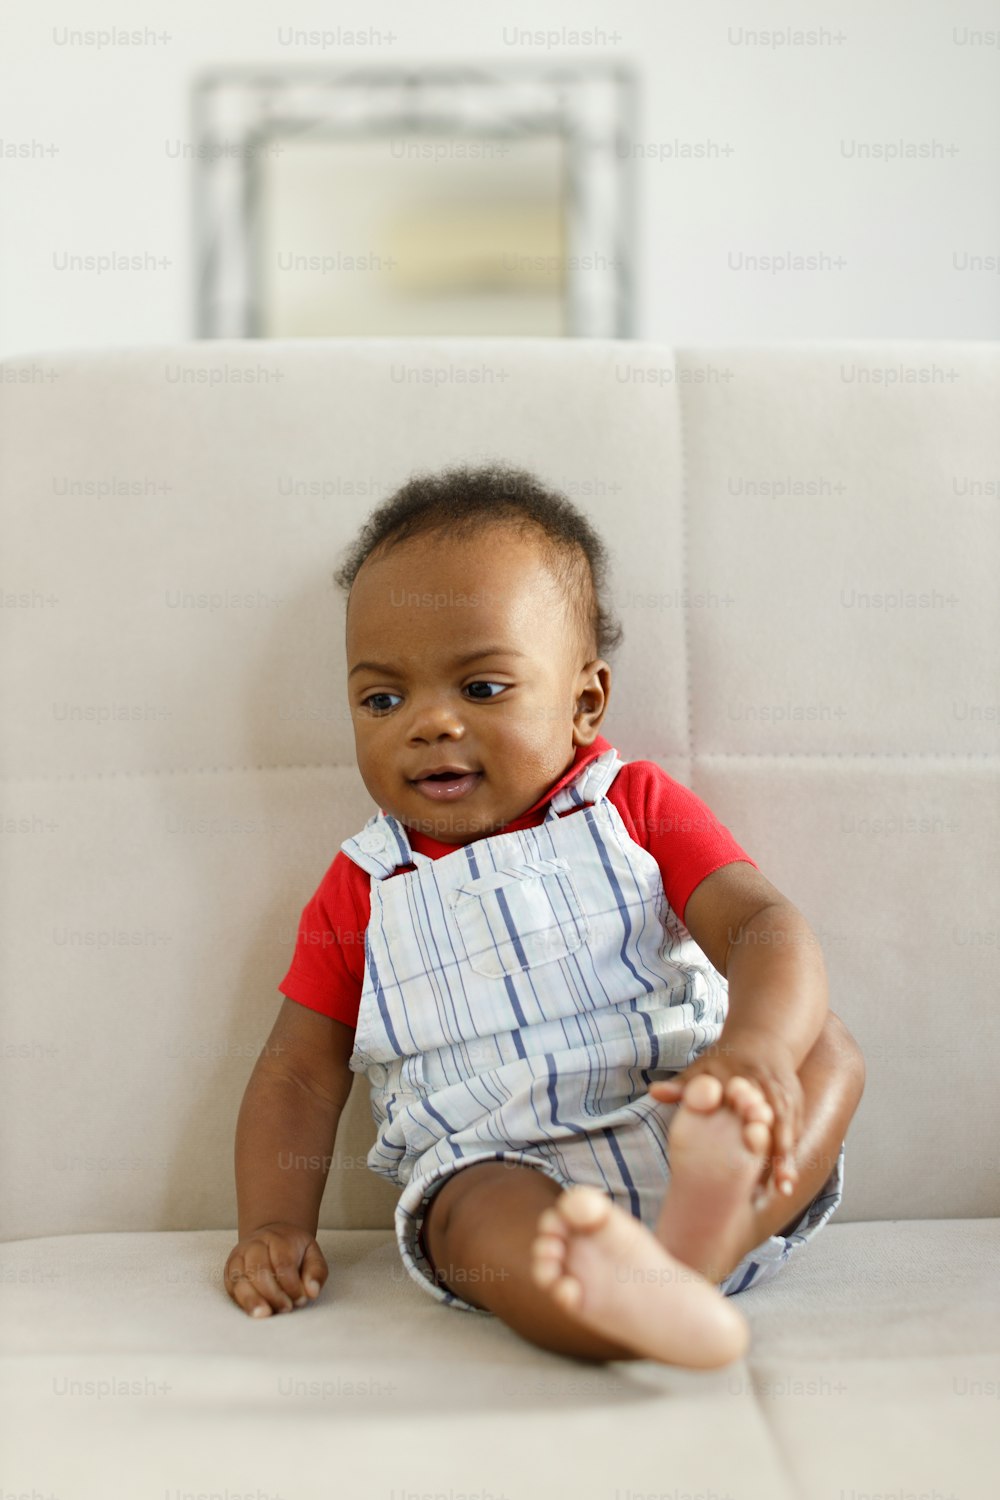 Un bebé sentado en un sofá blanco con una camisa roja